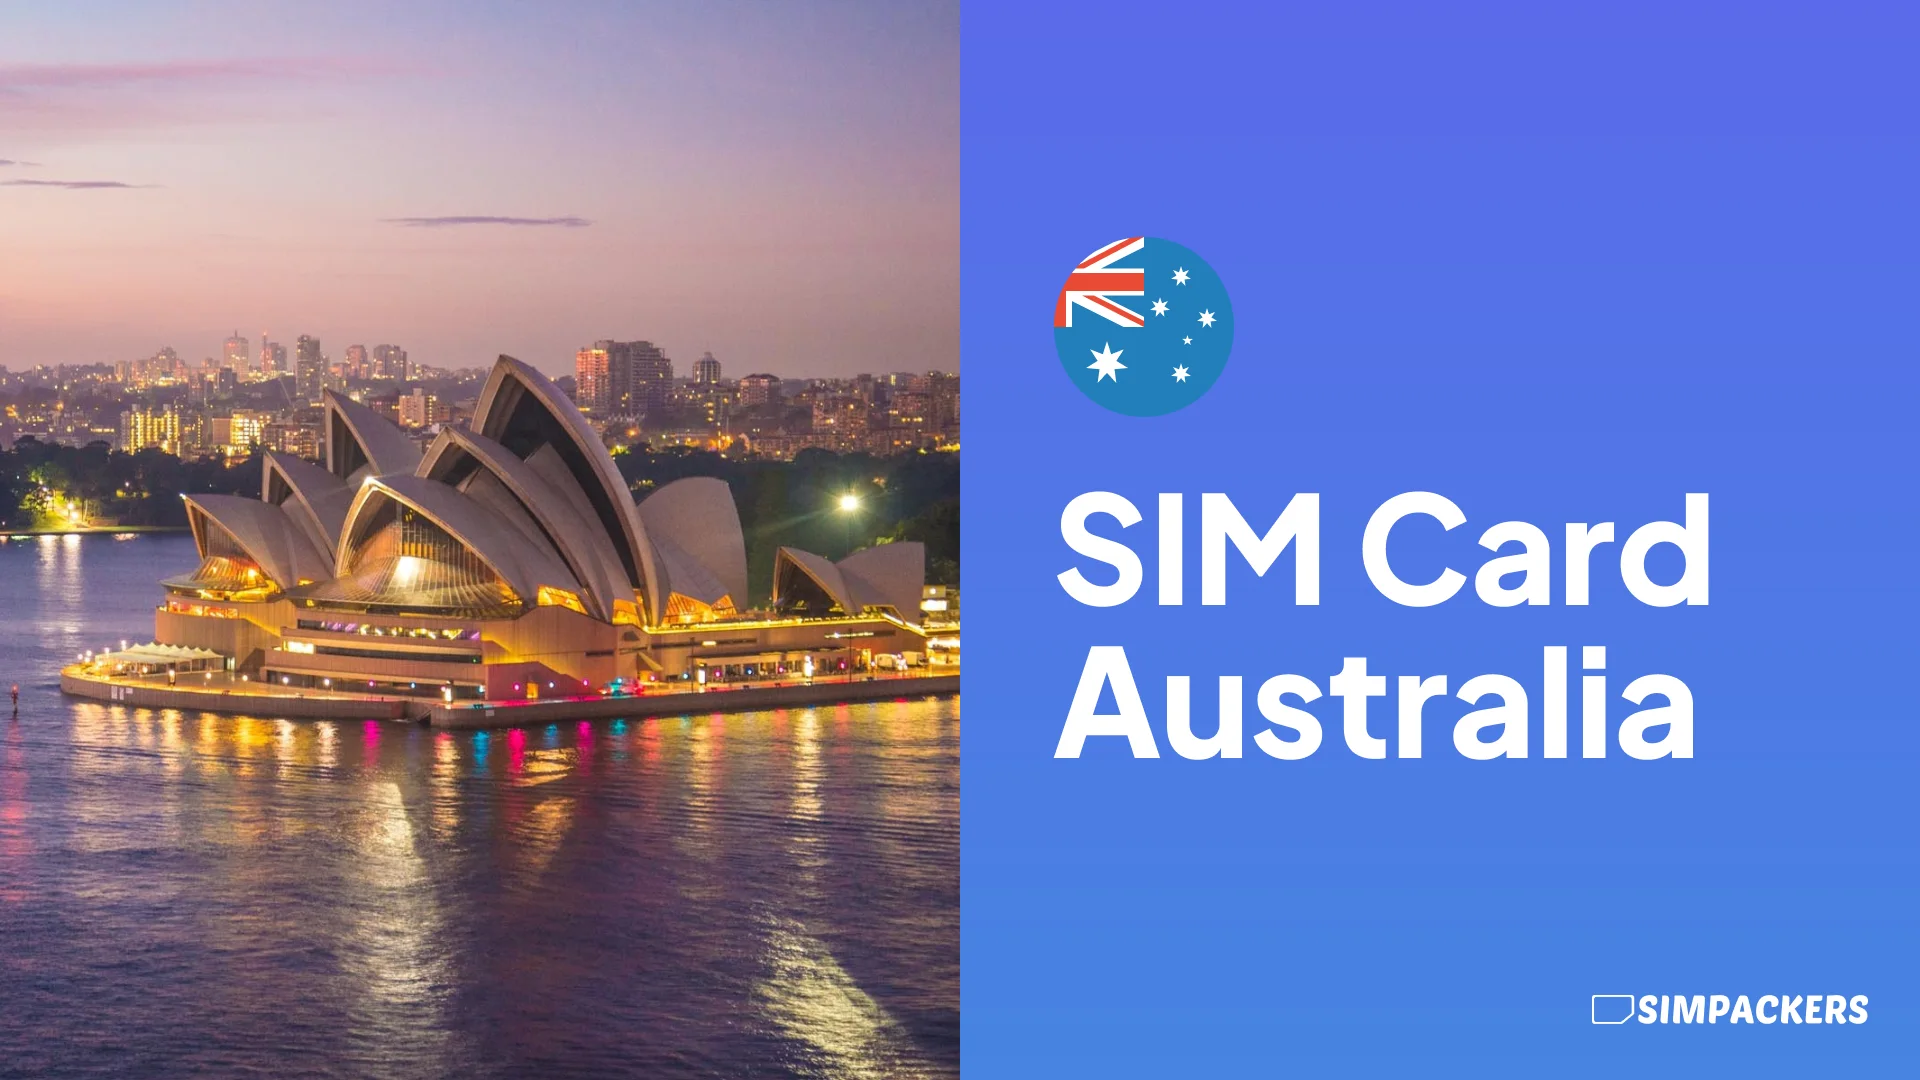 EN/FEATURED_IMAGES/sim-card-australia.webp